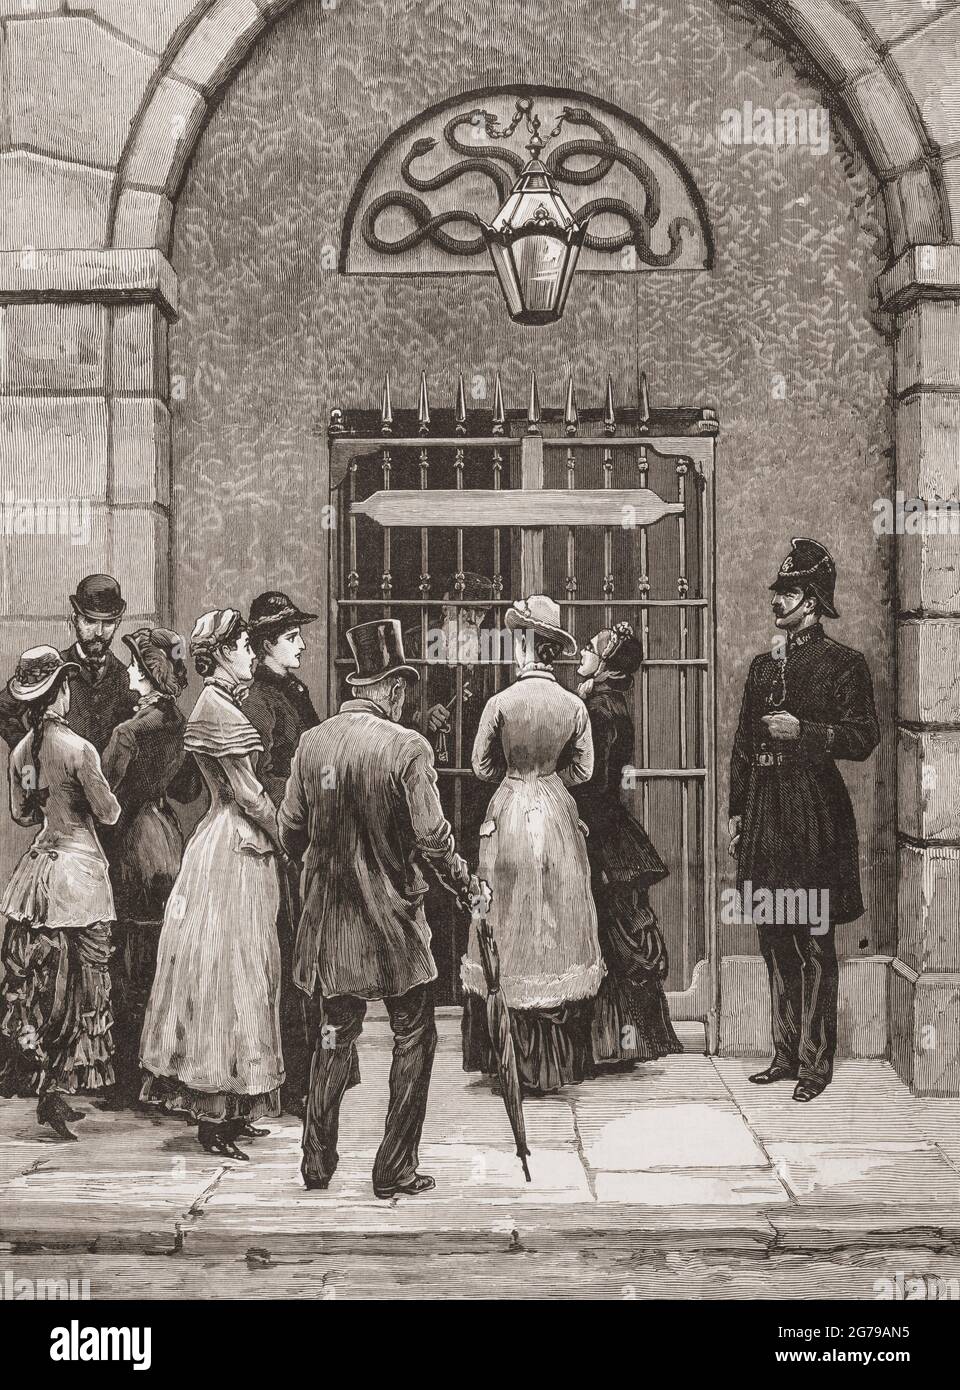 Kilmainham Gaol, Dublin, Republik Irland. Irische Familien warten am Haupttor, um Gefangene zu betreten und zu besuchen. Aus Den London Illustrated News, 5. November 1881. Stockfoto